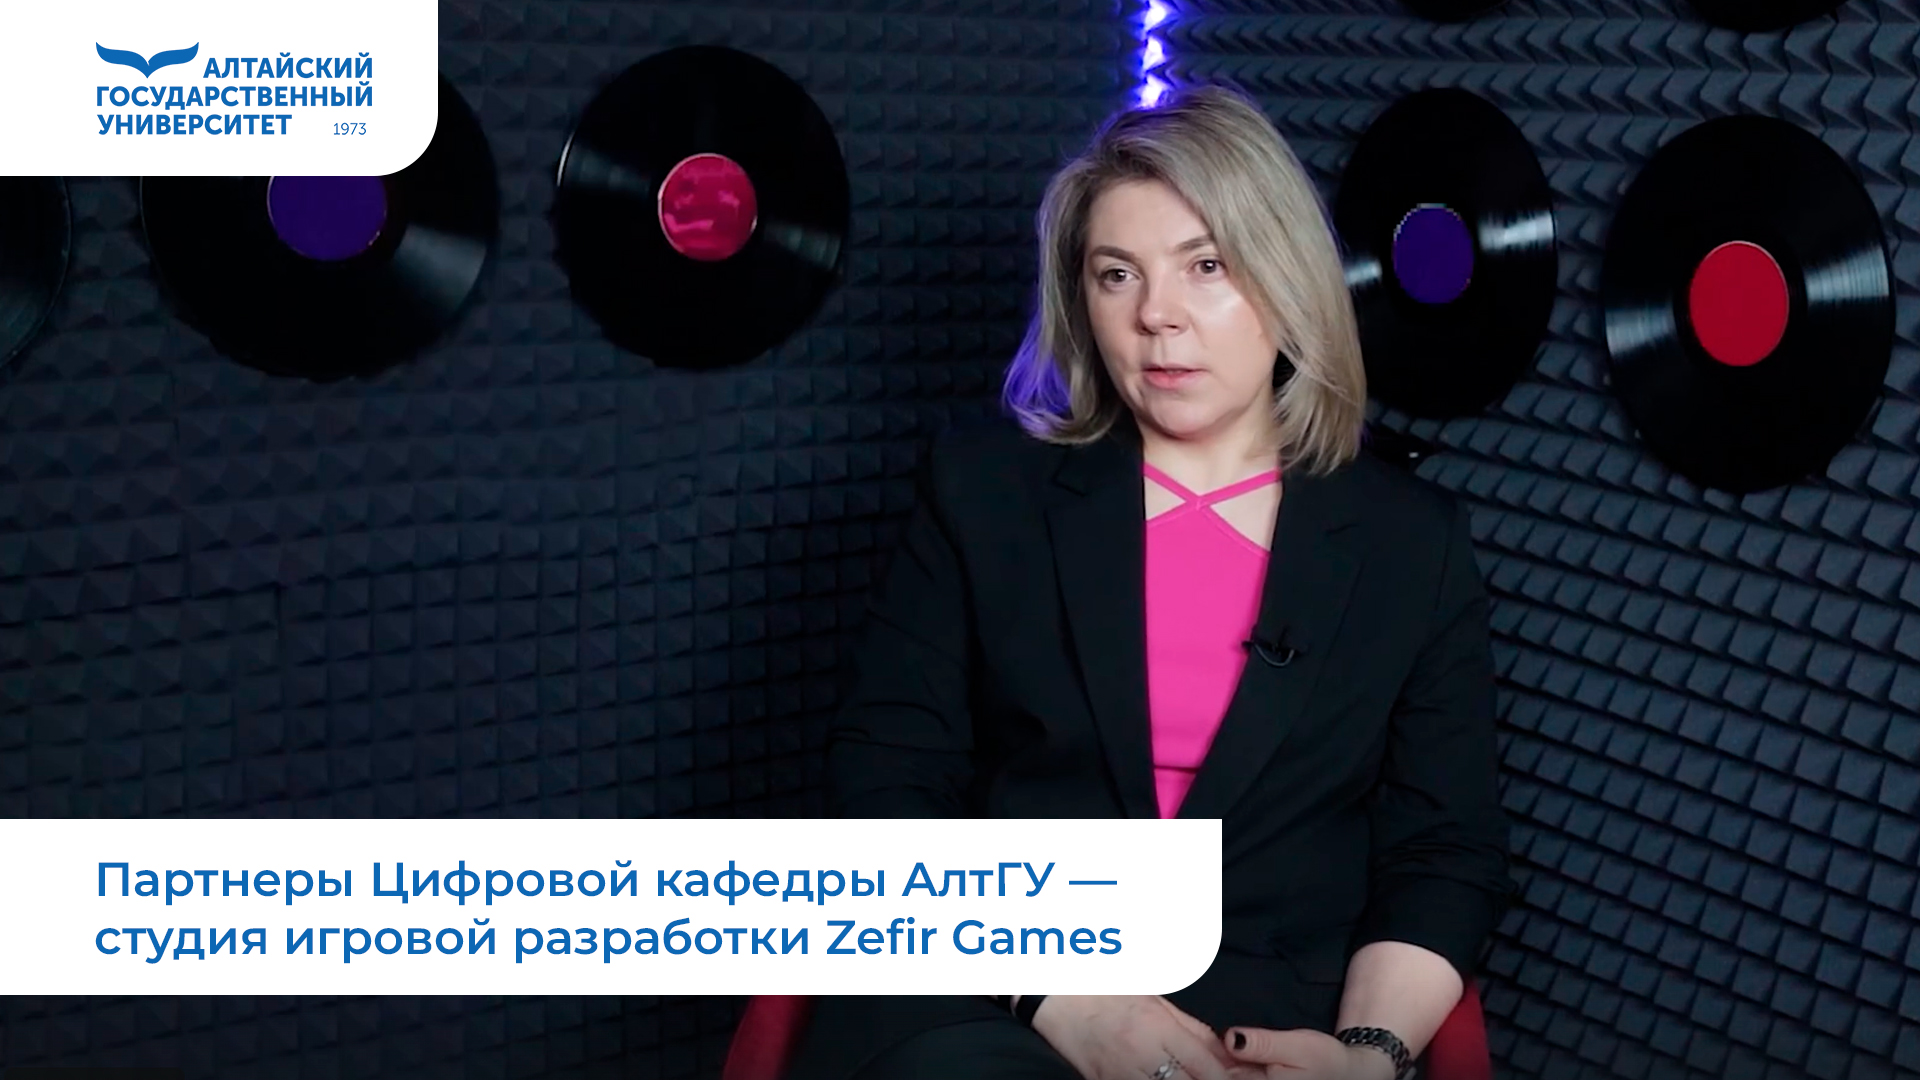 Партнеры Цифровой кафедры АлтГУ — студия игровой разработки Zefir Games